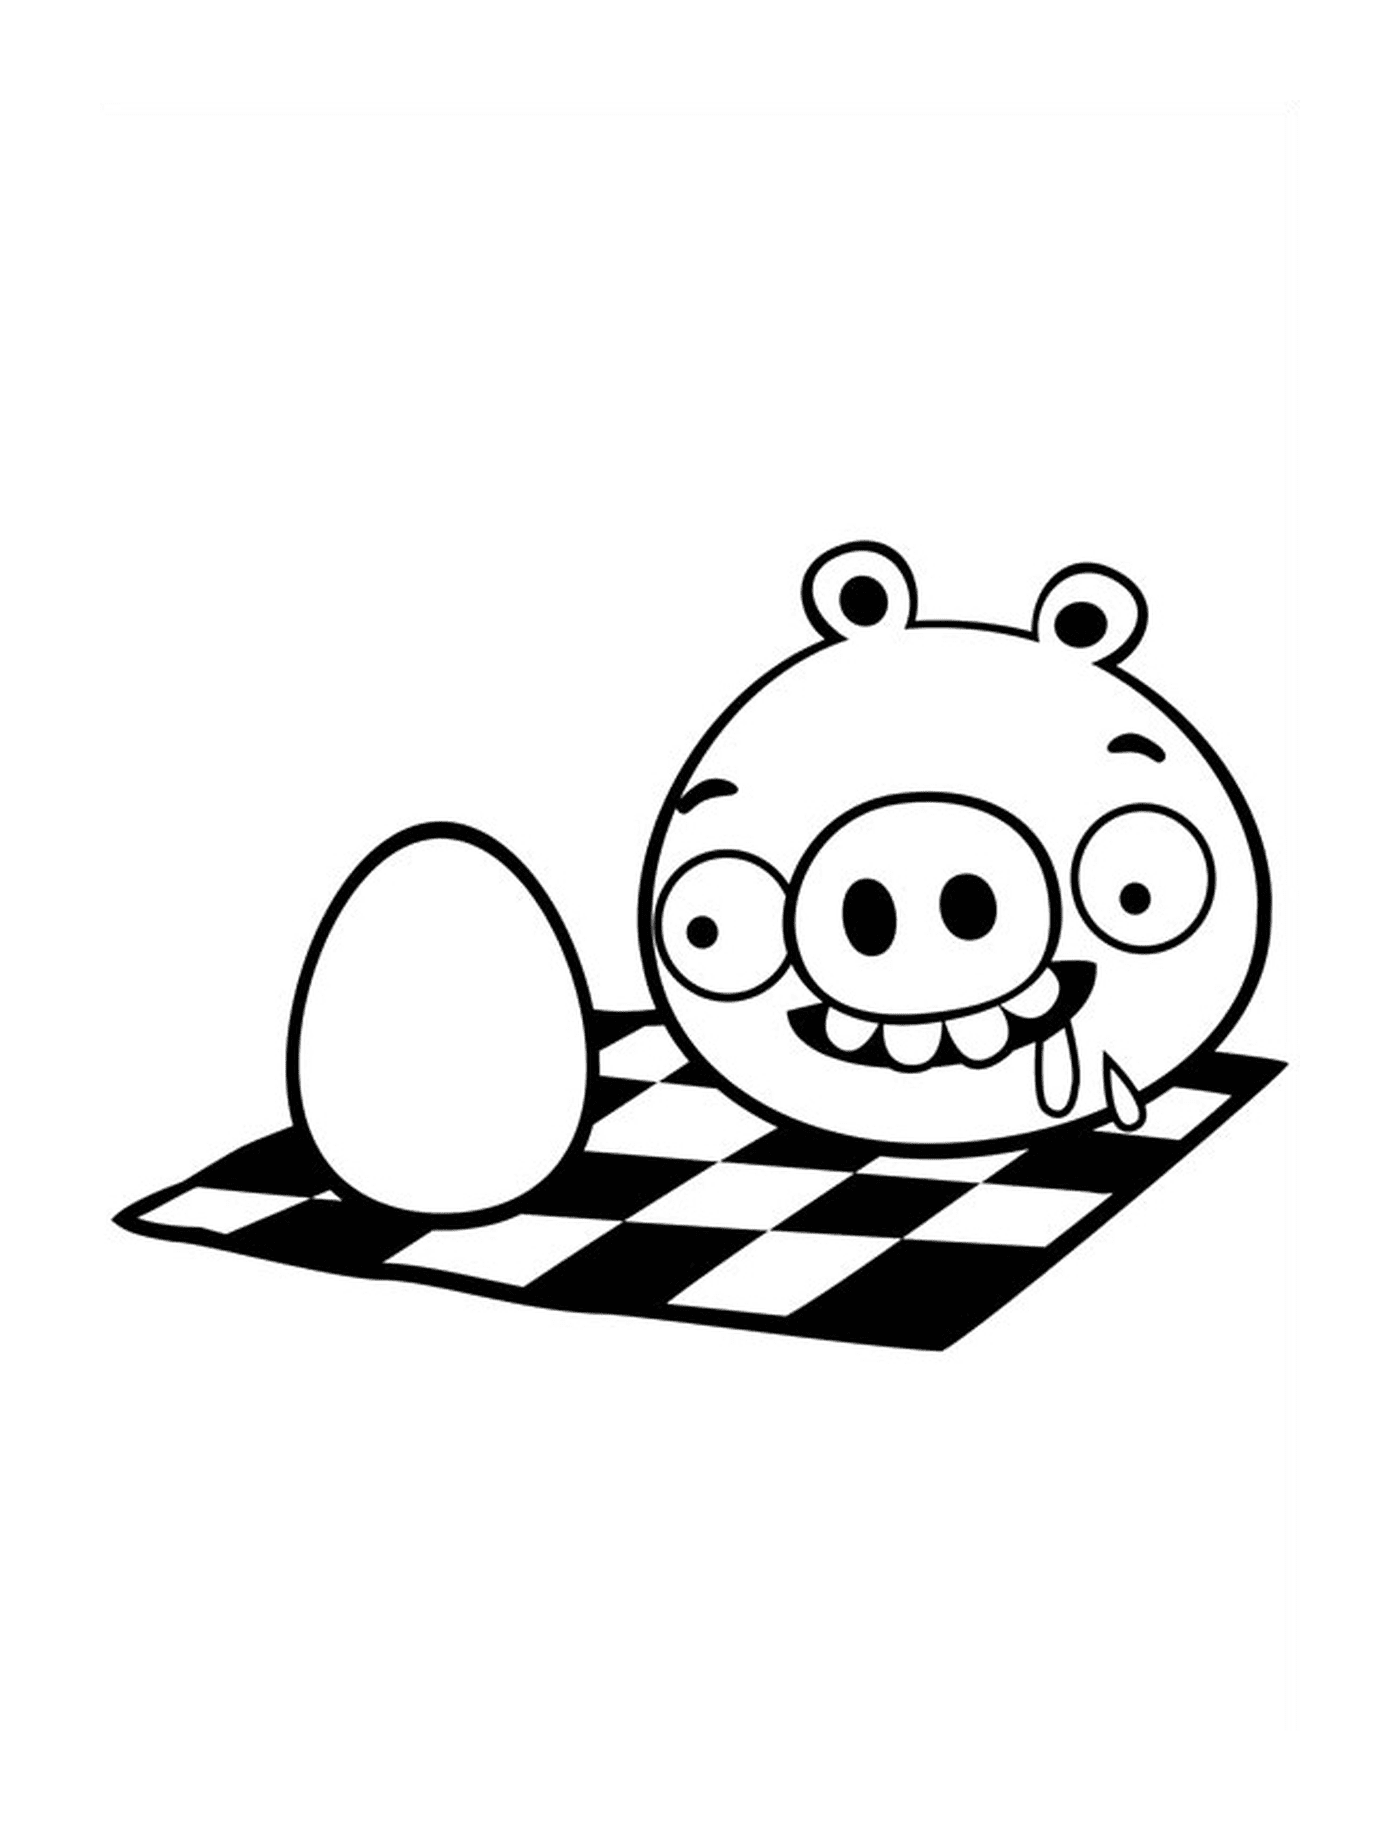  Angry Birds porco quer comer ovo 